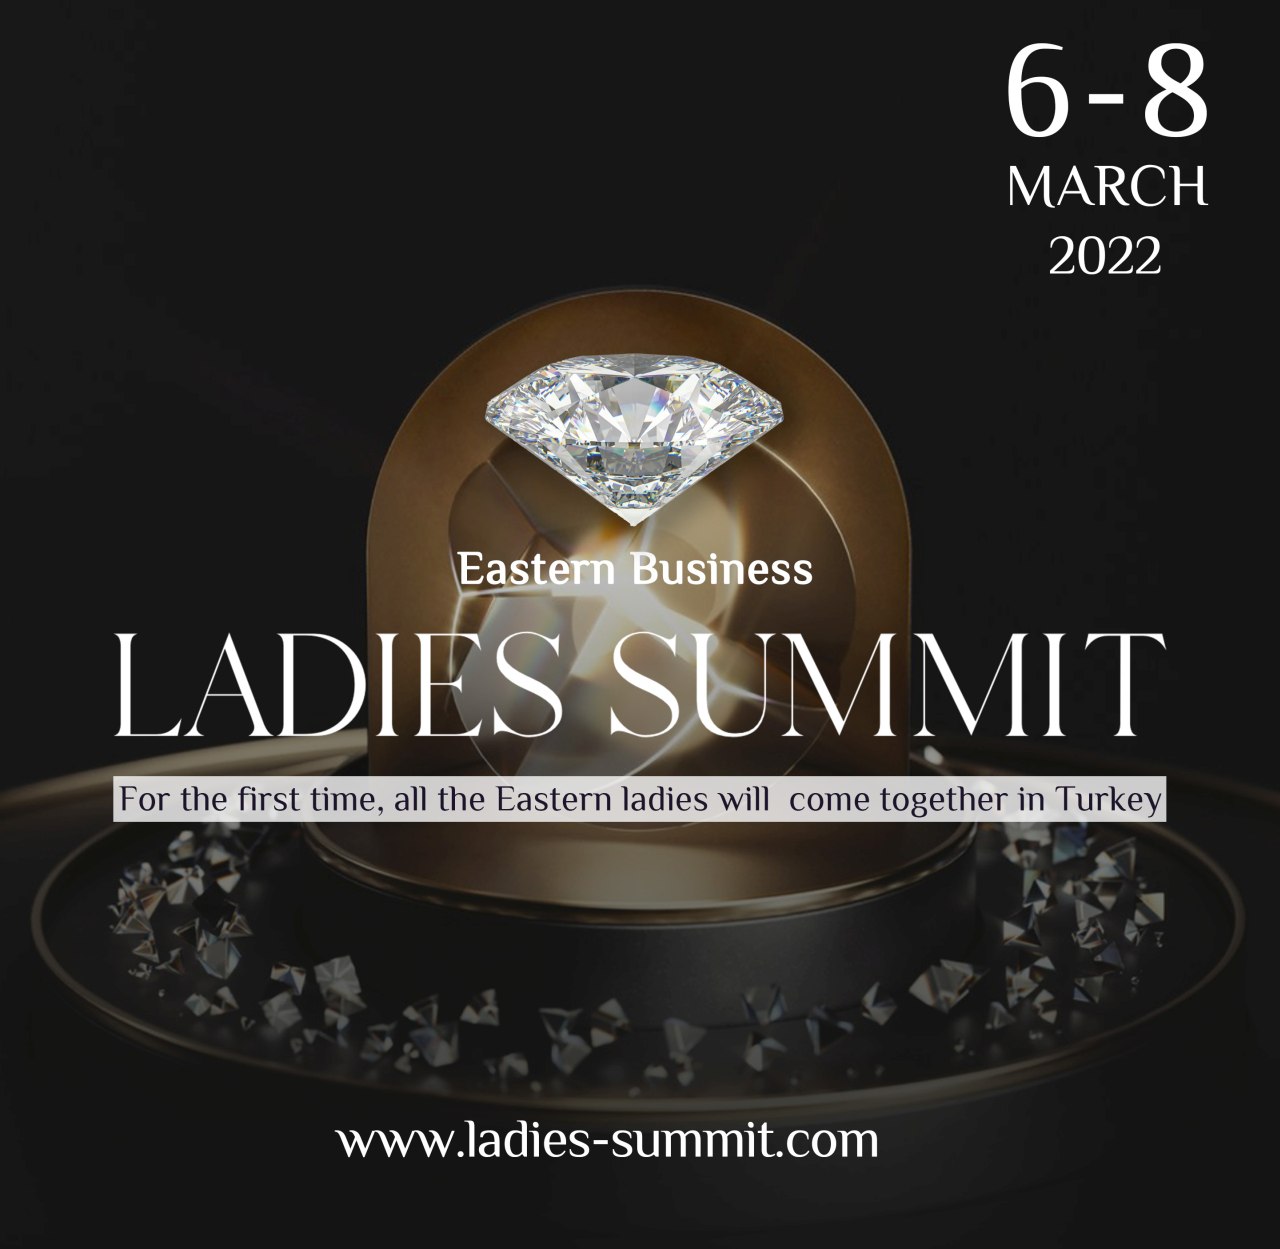 фото: Уникальное, глобальное мероприятие в Стамбуле: форум Eastern Business Woman Summit пройдет с 6 по 8 марта и соберет бизнес-леди восточных стран